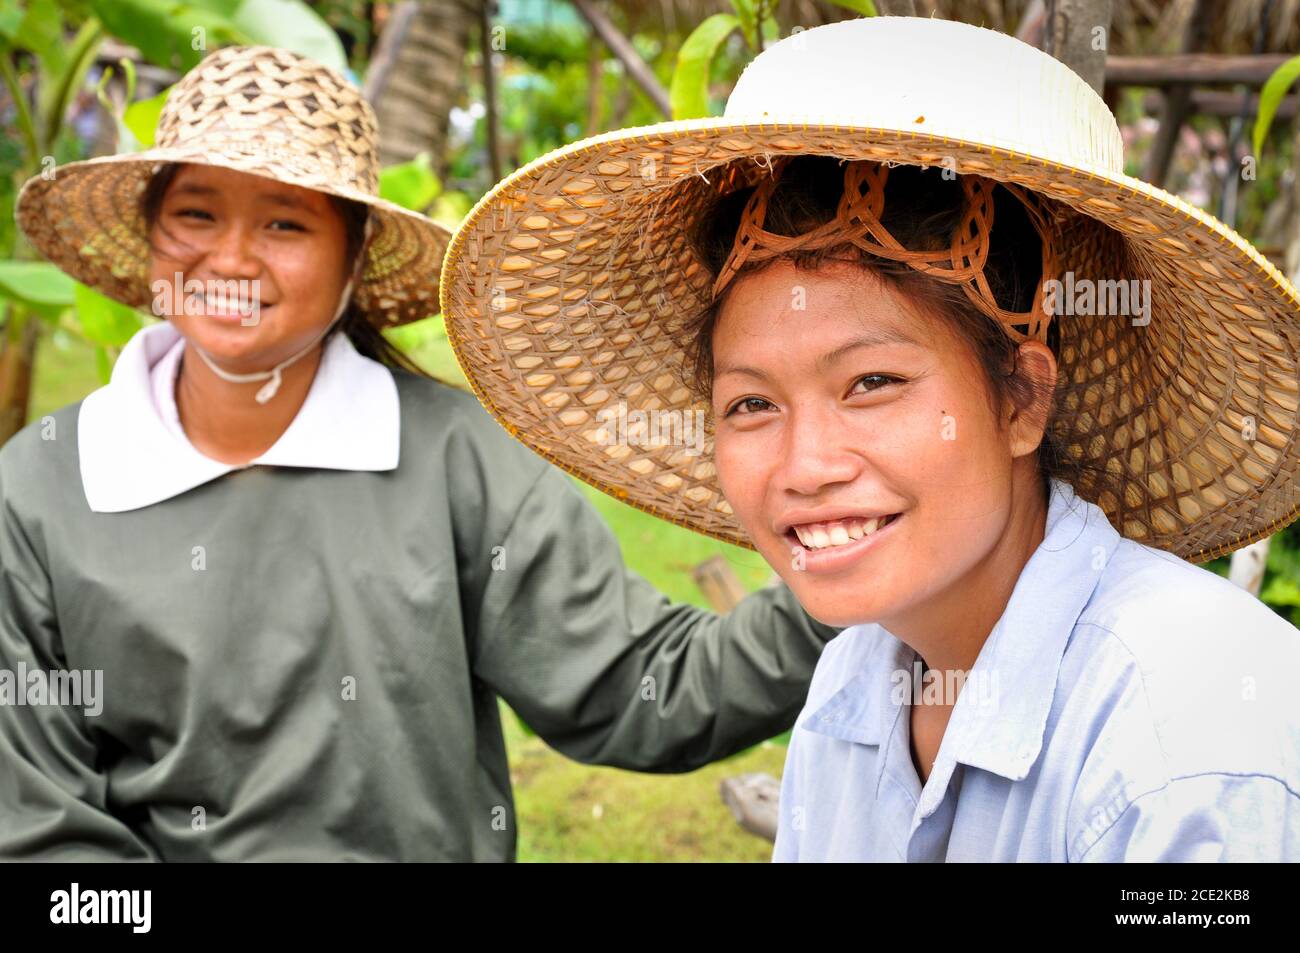 Cappelli Tailandesi Immagini E Fotos Stock Alamy